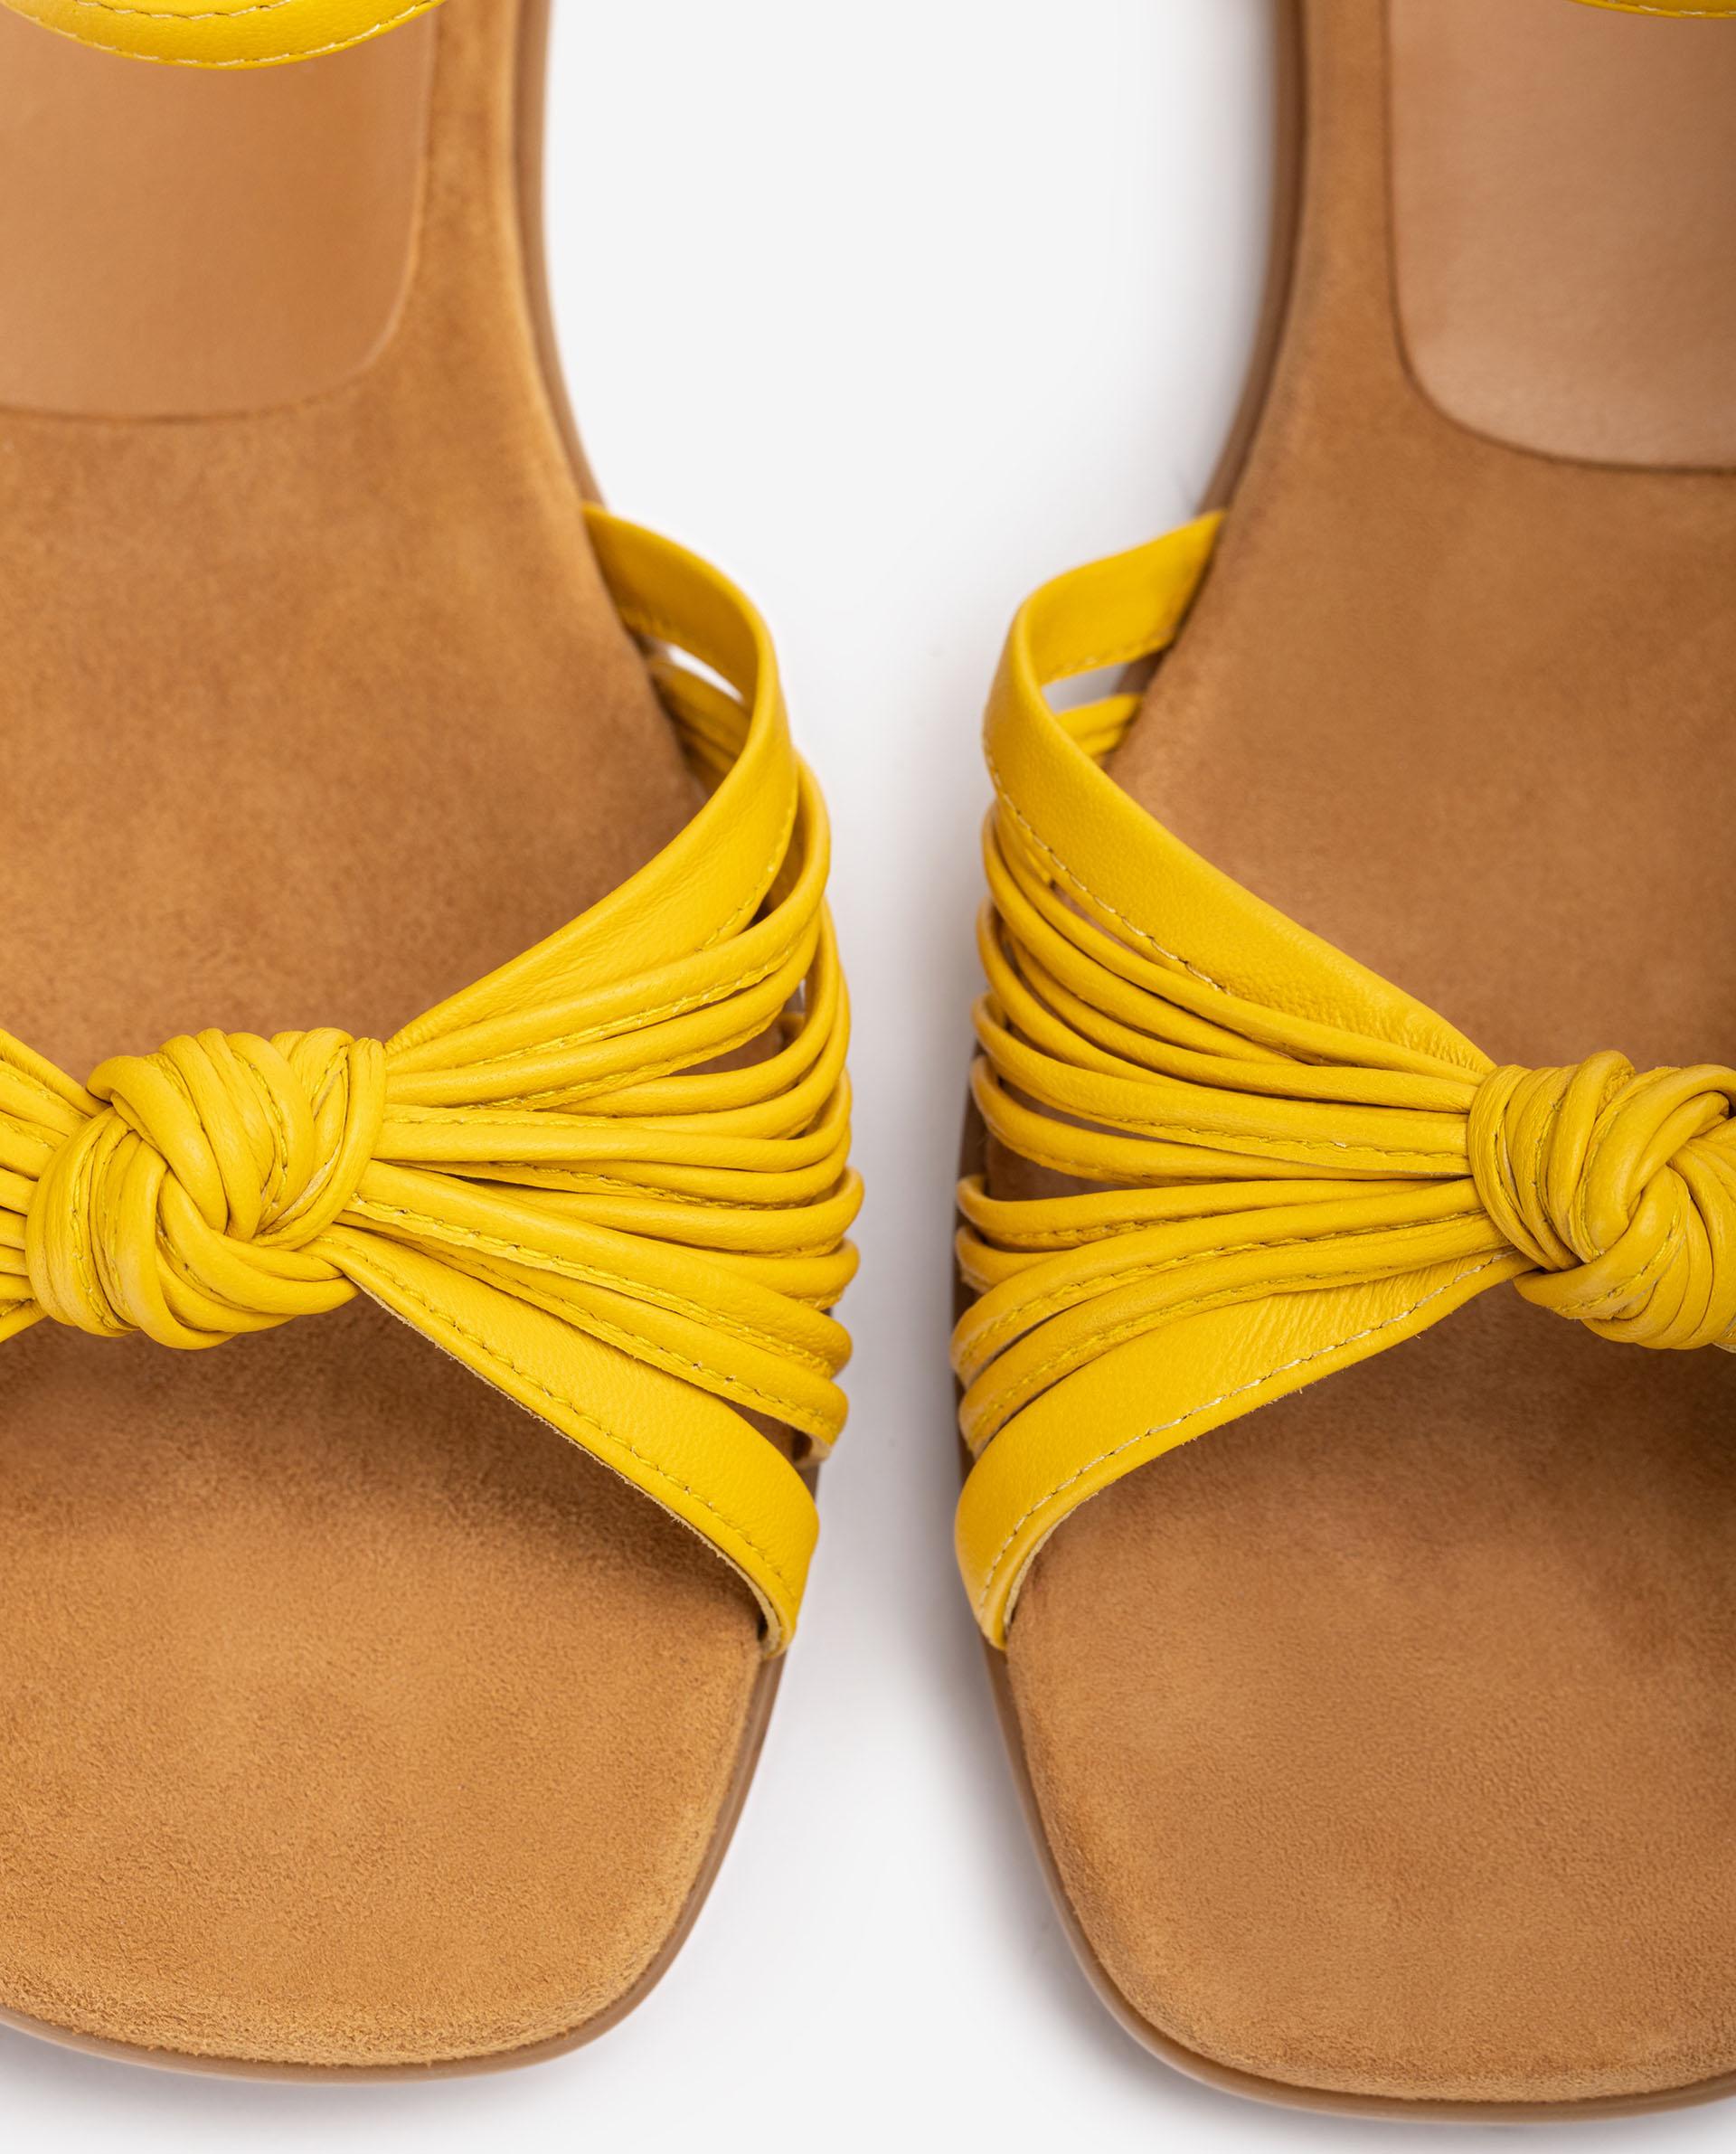 Unisa Sandals CLIPSE_NS limone